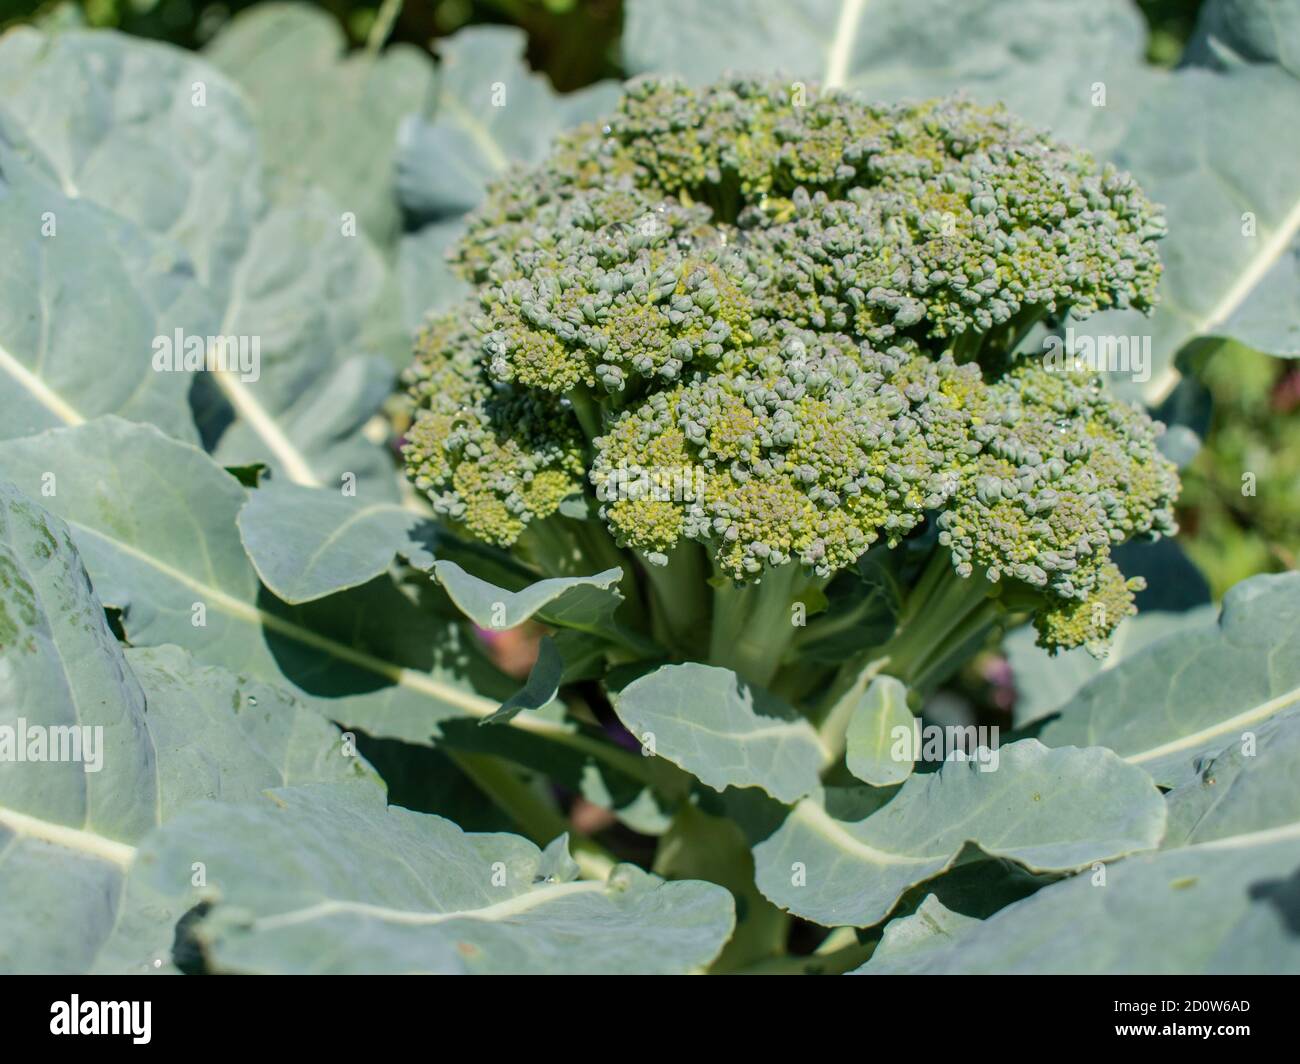 Broccoli growing in the garden, Brassica oleracea var. italica Stock Photo